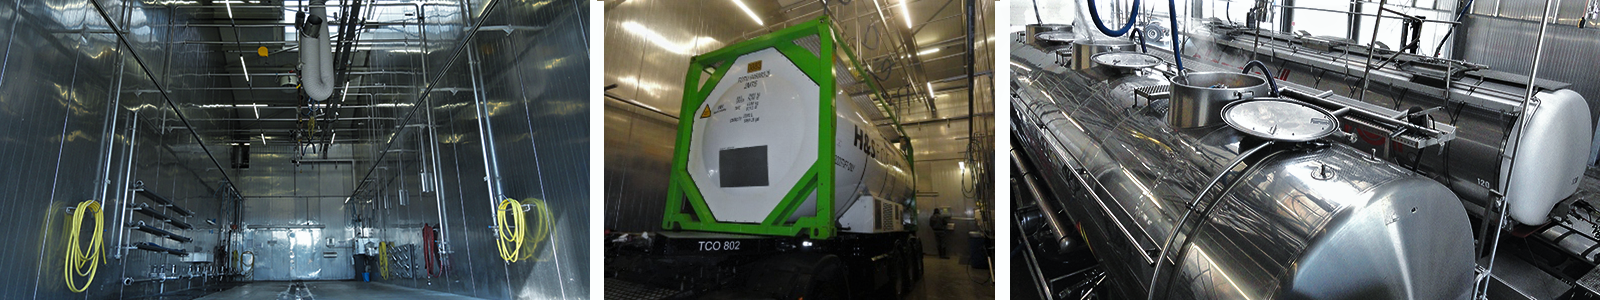 Truckcleaning Venlo gebruikt elektrische kogelkranen van JP fluid om truck tanks te cleanen.